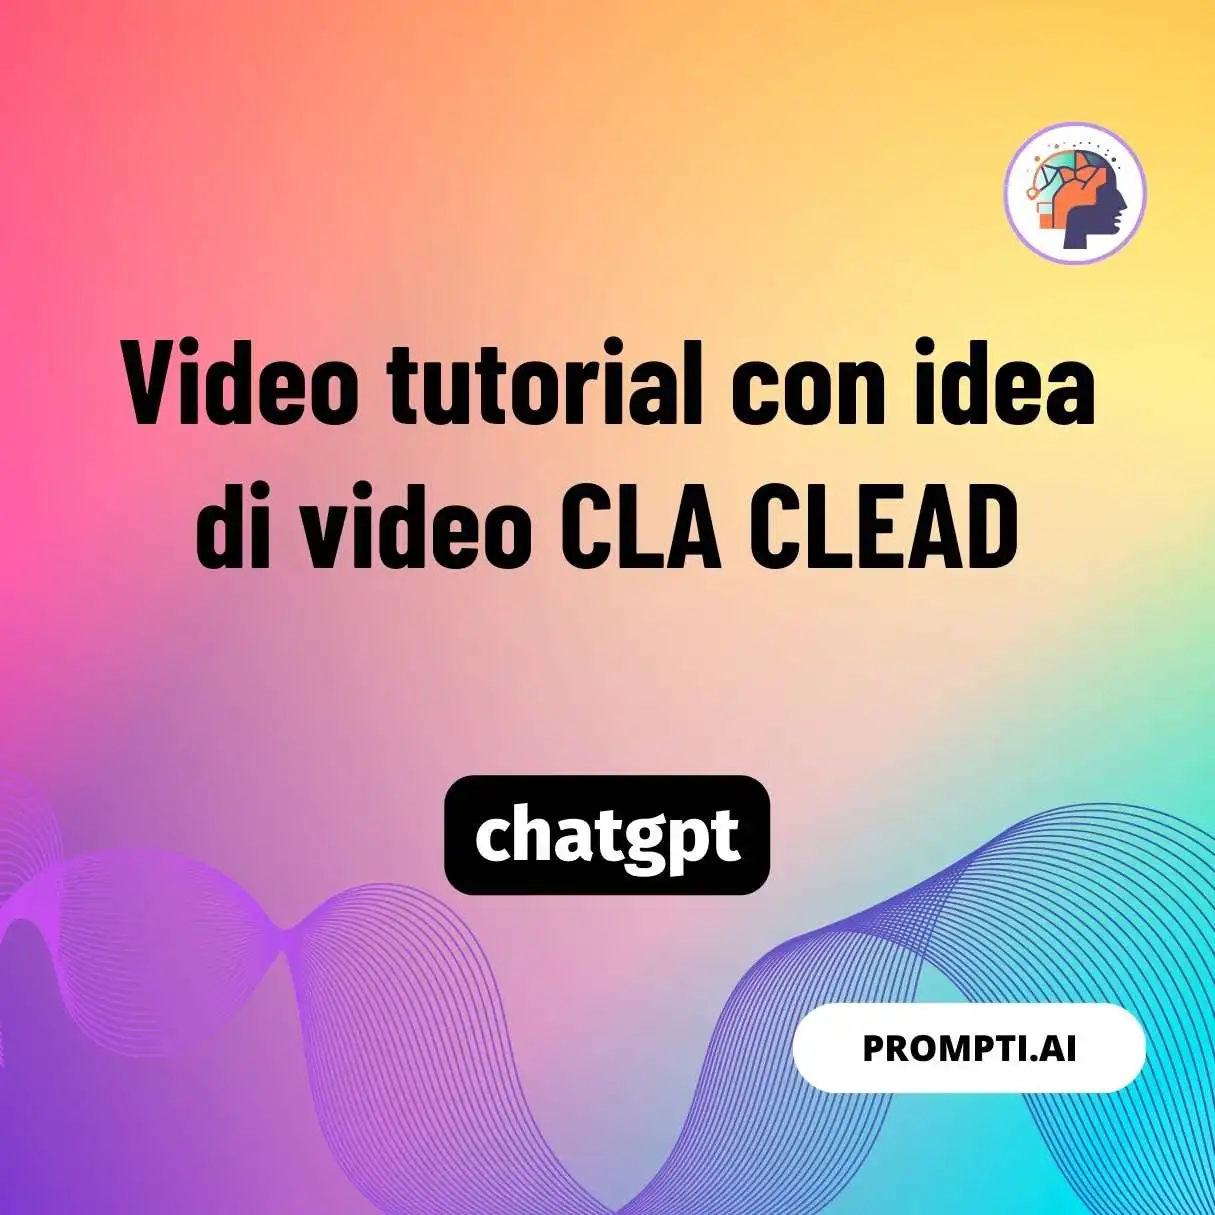 Video tutorial con idea di video CLA CLEAD